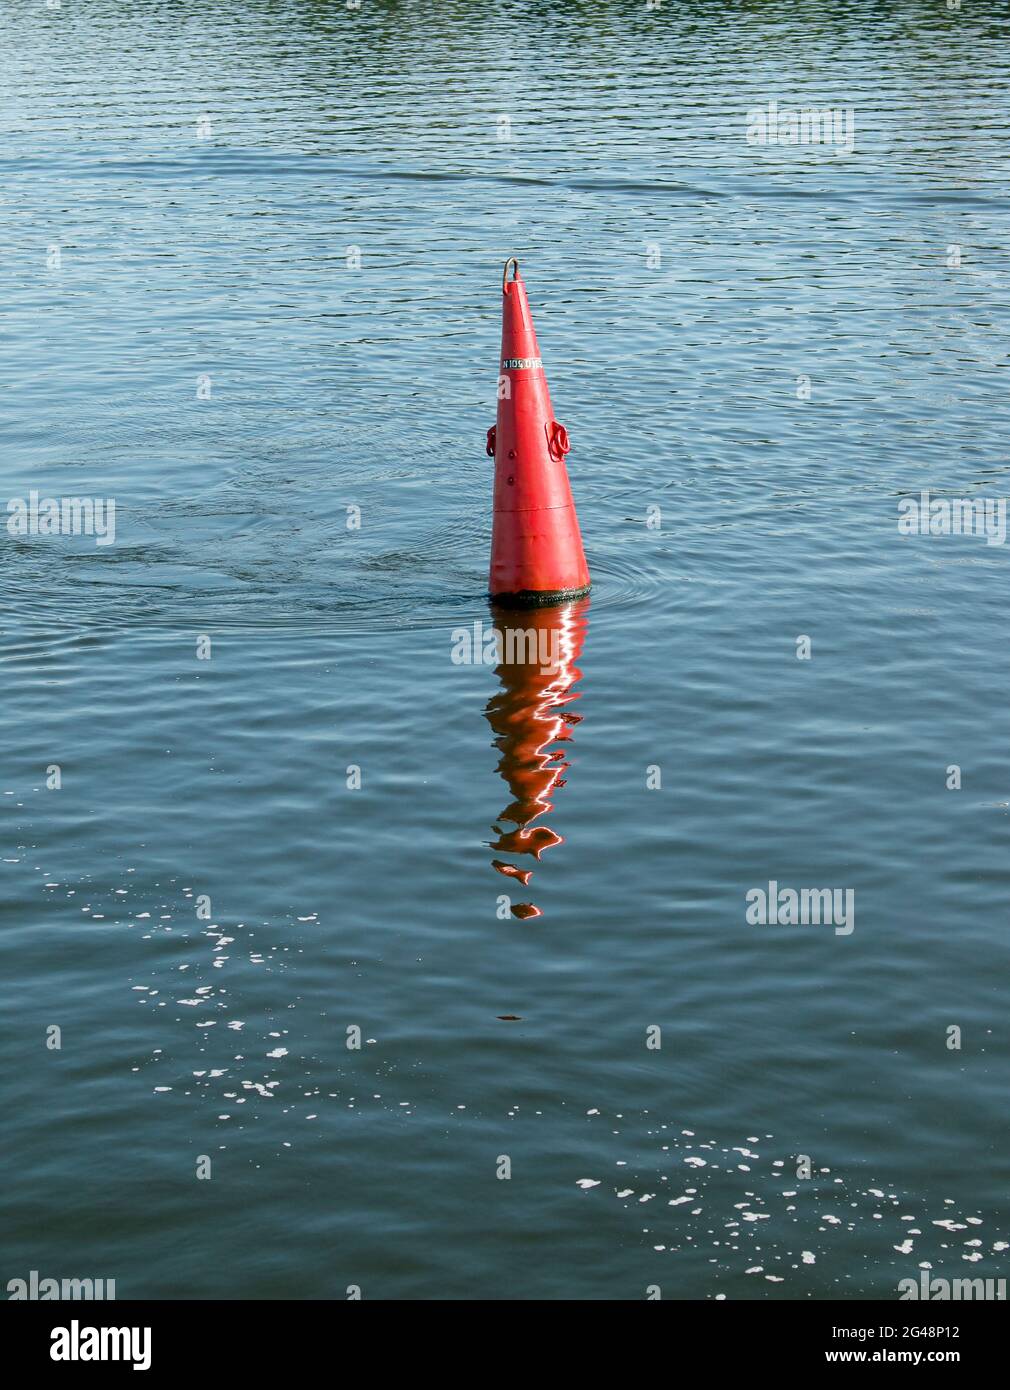 Schwimmende rote Navigationsboje auf blauem Wasser des Dnipro River. Boje im Fluss. Navigationsausrüstung. Ruhige Wasseroberfläche. Stockfoto